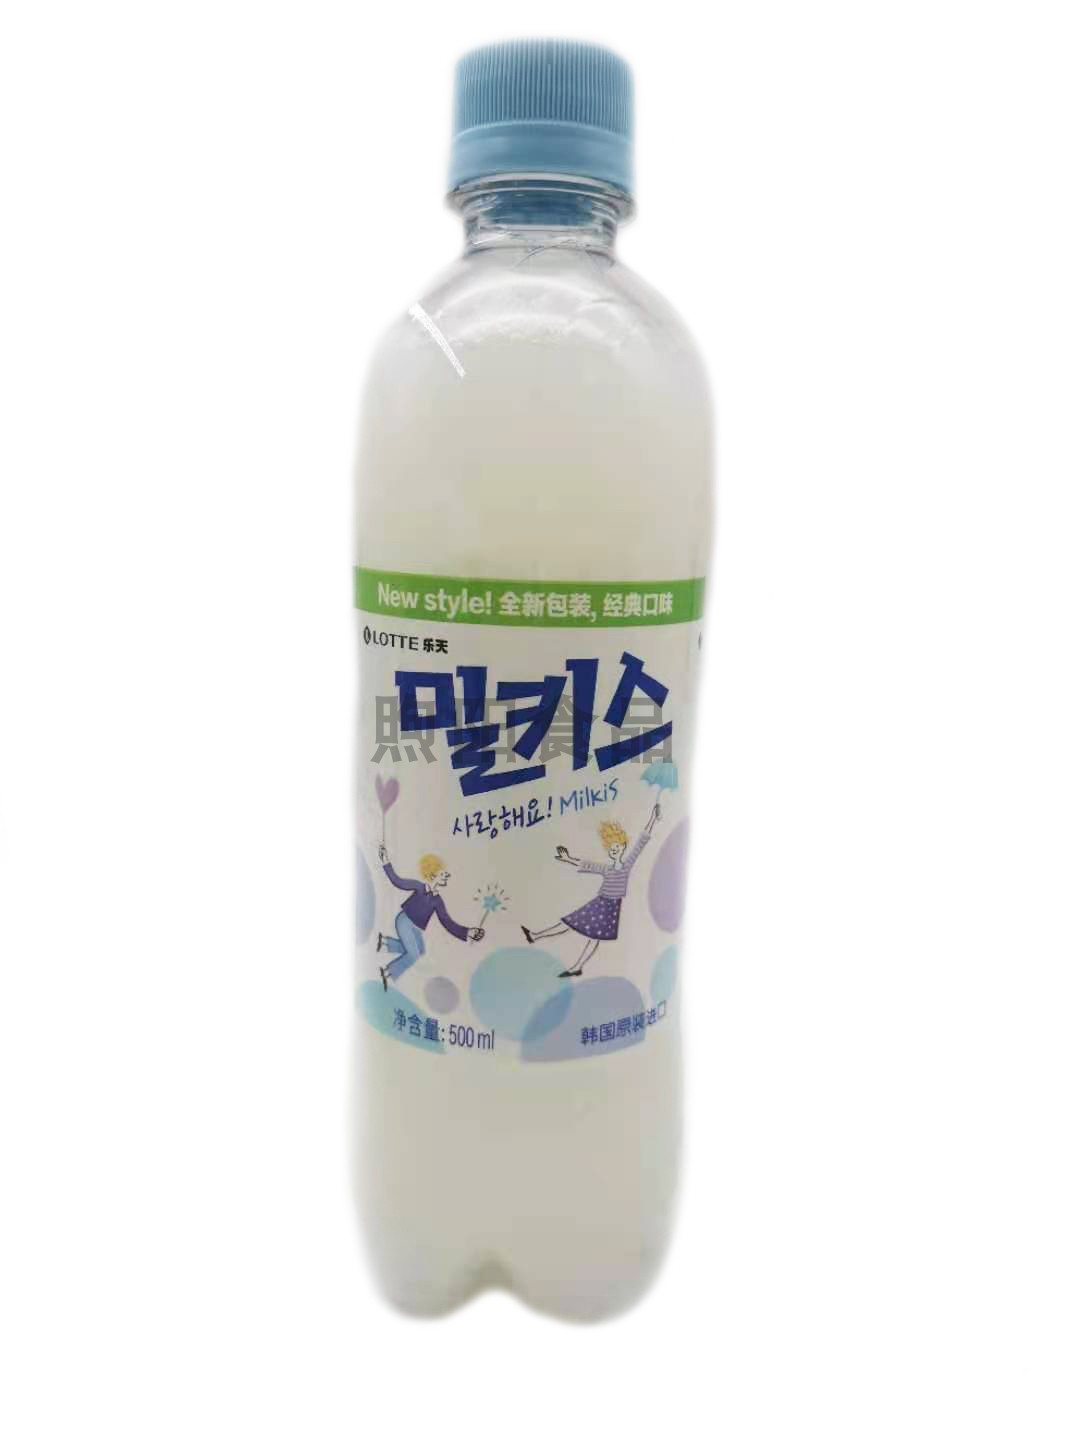 进口韩国乐天牛奶苏打汽水碳酸饮料妙之吻棉花糖味500ml瓶装整箱-图2